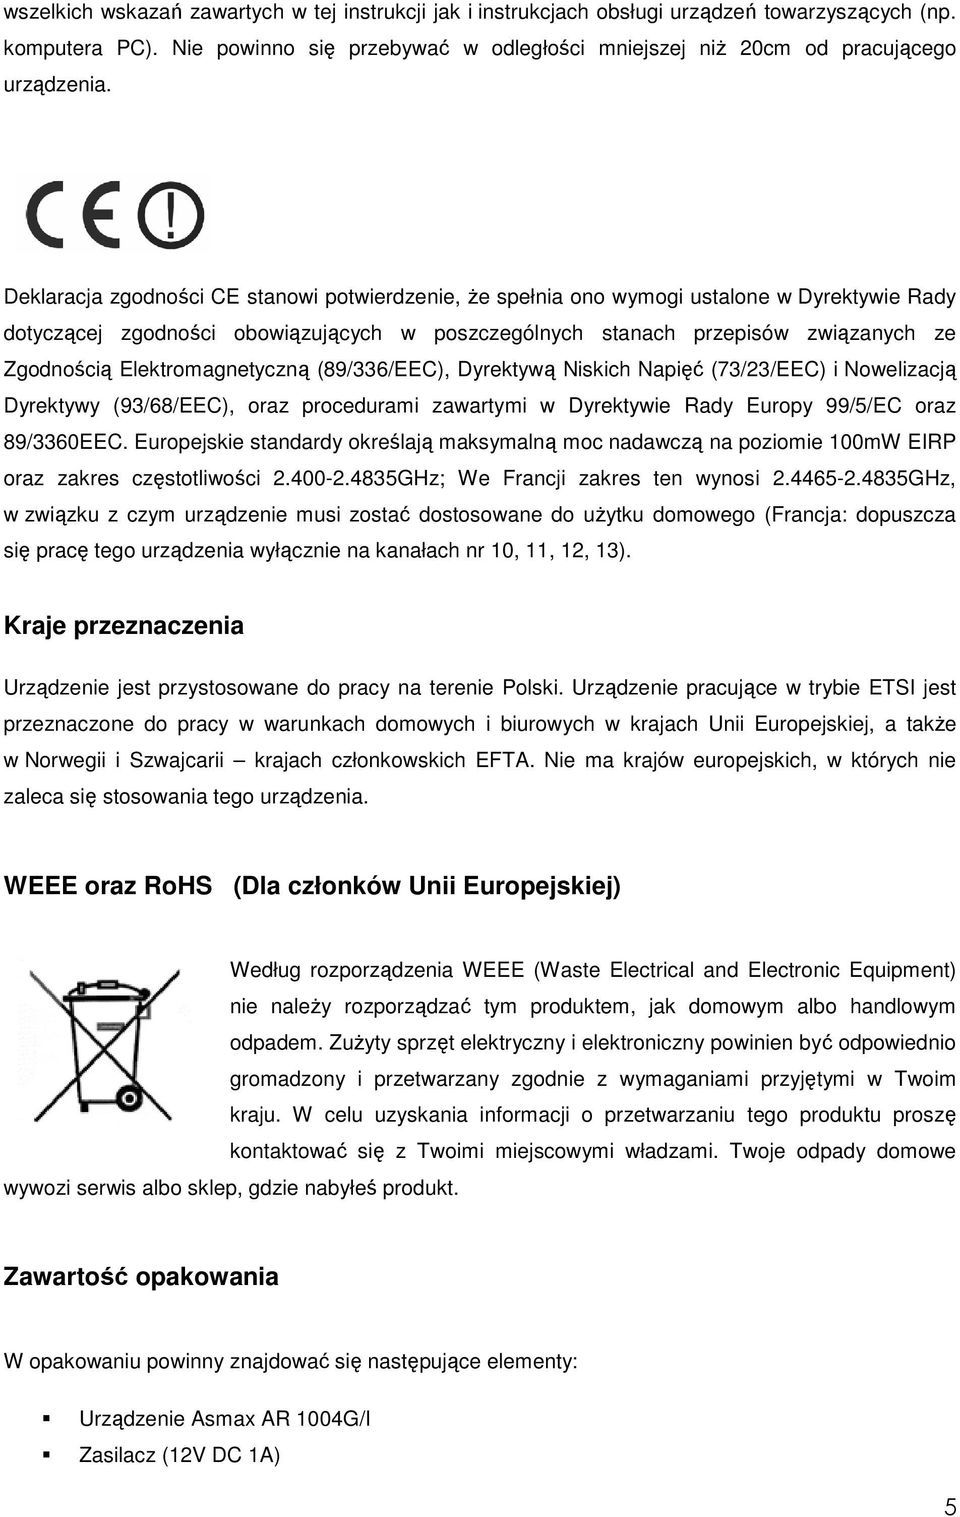 Elektromagnetyczną (89/336/EEC), Dyrektywą Niskich Napięć (73/23/EEC) i Nowelizacją Dyrektywy (93/68/EEC), oraz procedurami zawartymi w Dyrektywie Rady Europy 99/5/EC oraz 89/3360EEC.